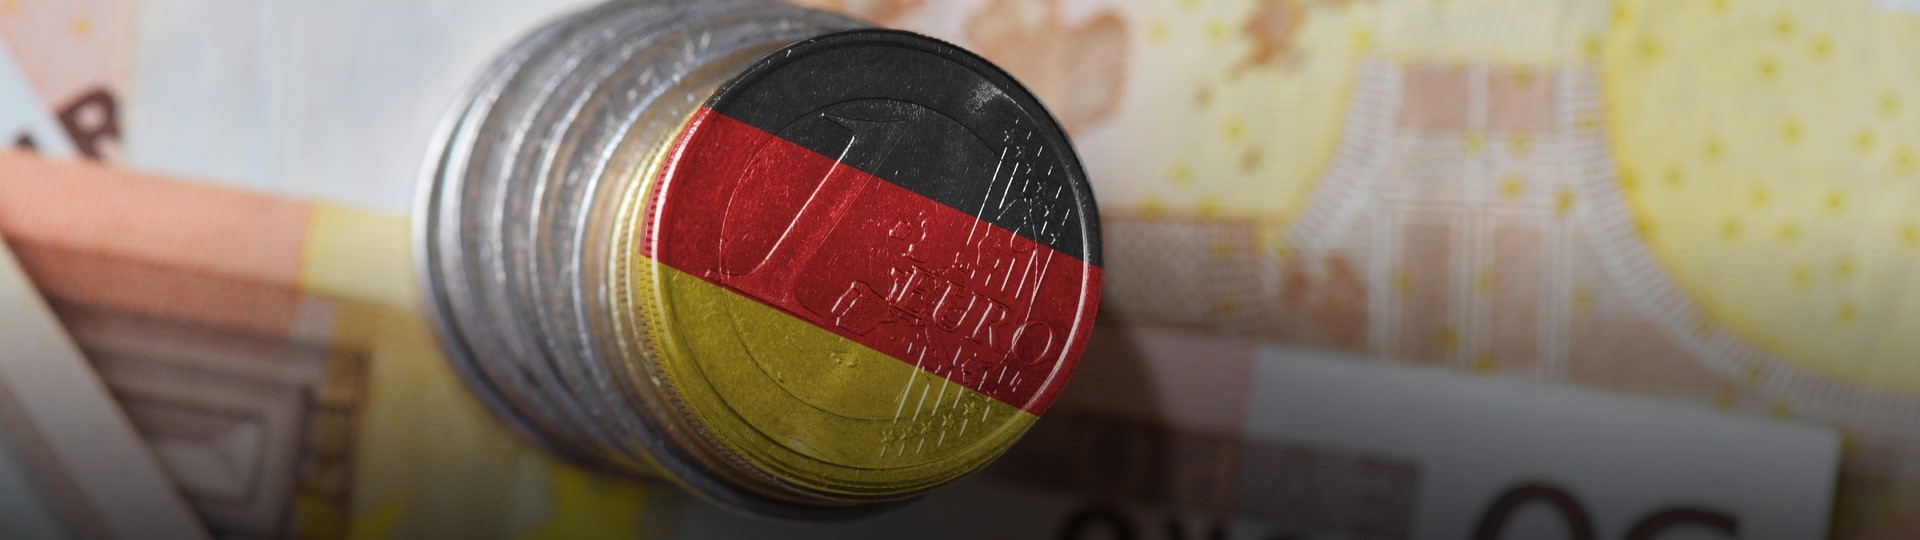 Německá ekonomika roste již deset let v řadě